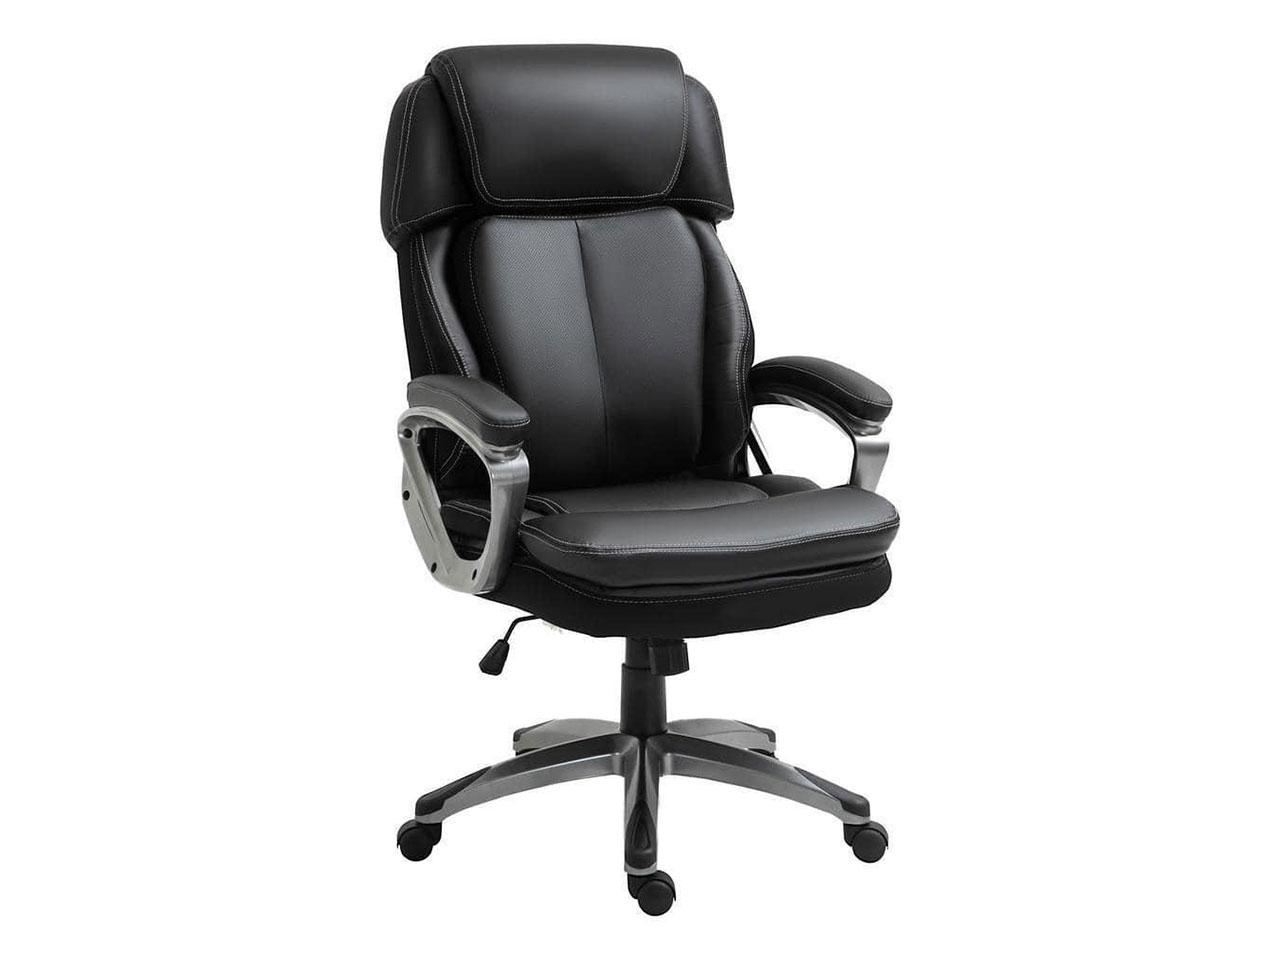 Kancelářská židle 921-502BK, s funkcí kolébky, opěrka hlavy, ergonomická, otočná, výškově nastavitelná, umělá kůže, černá, 68 x 76 x 117-125 cm